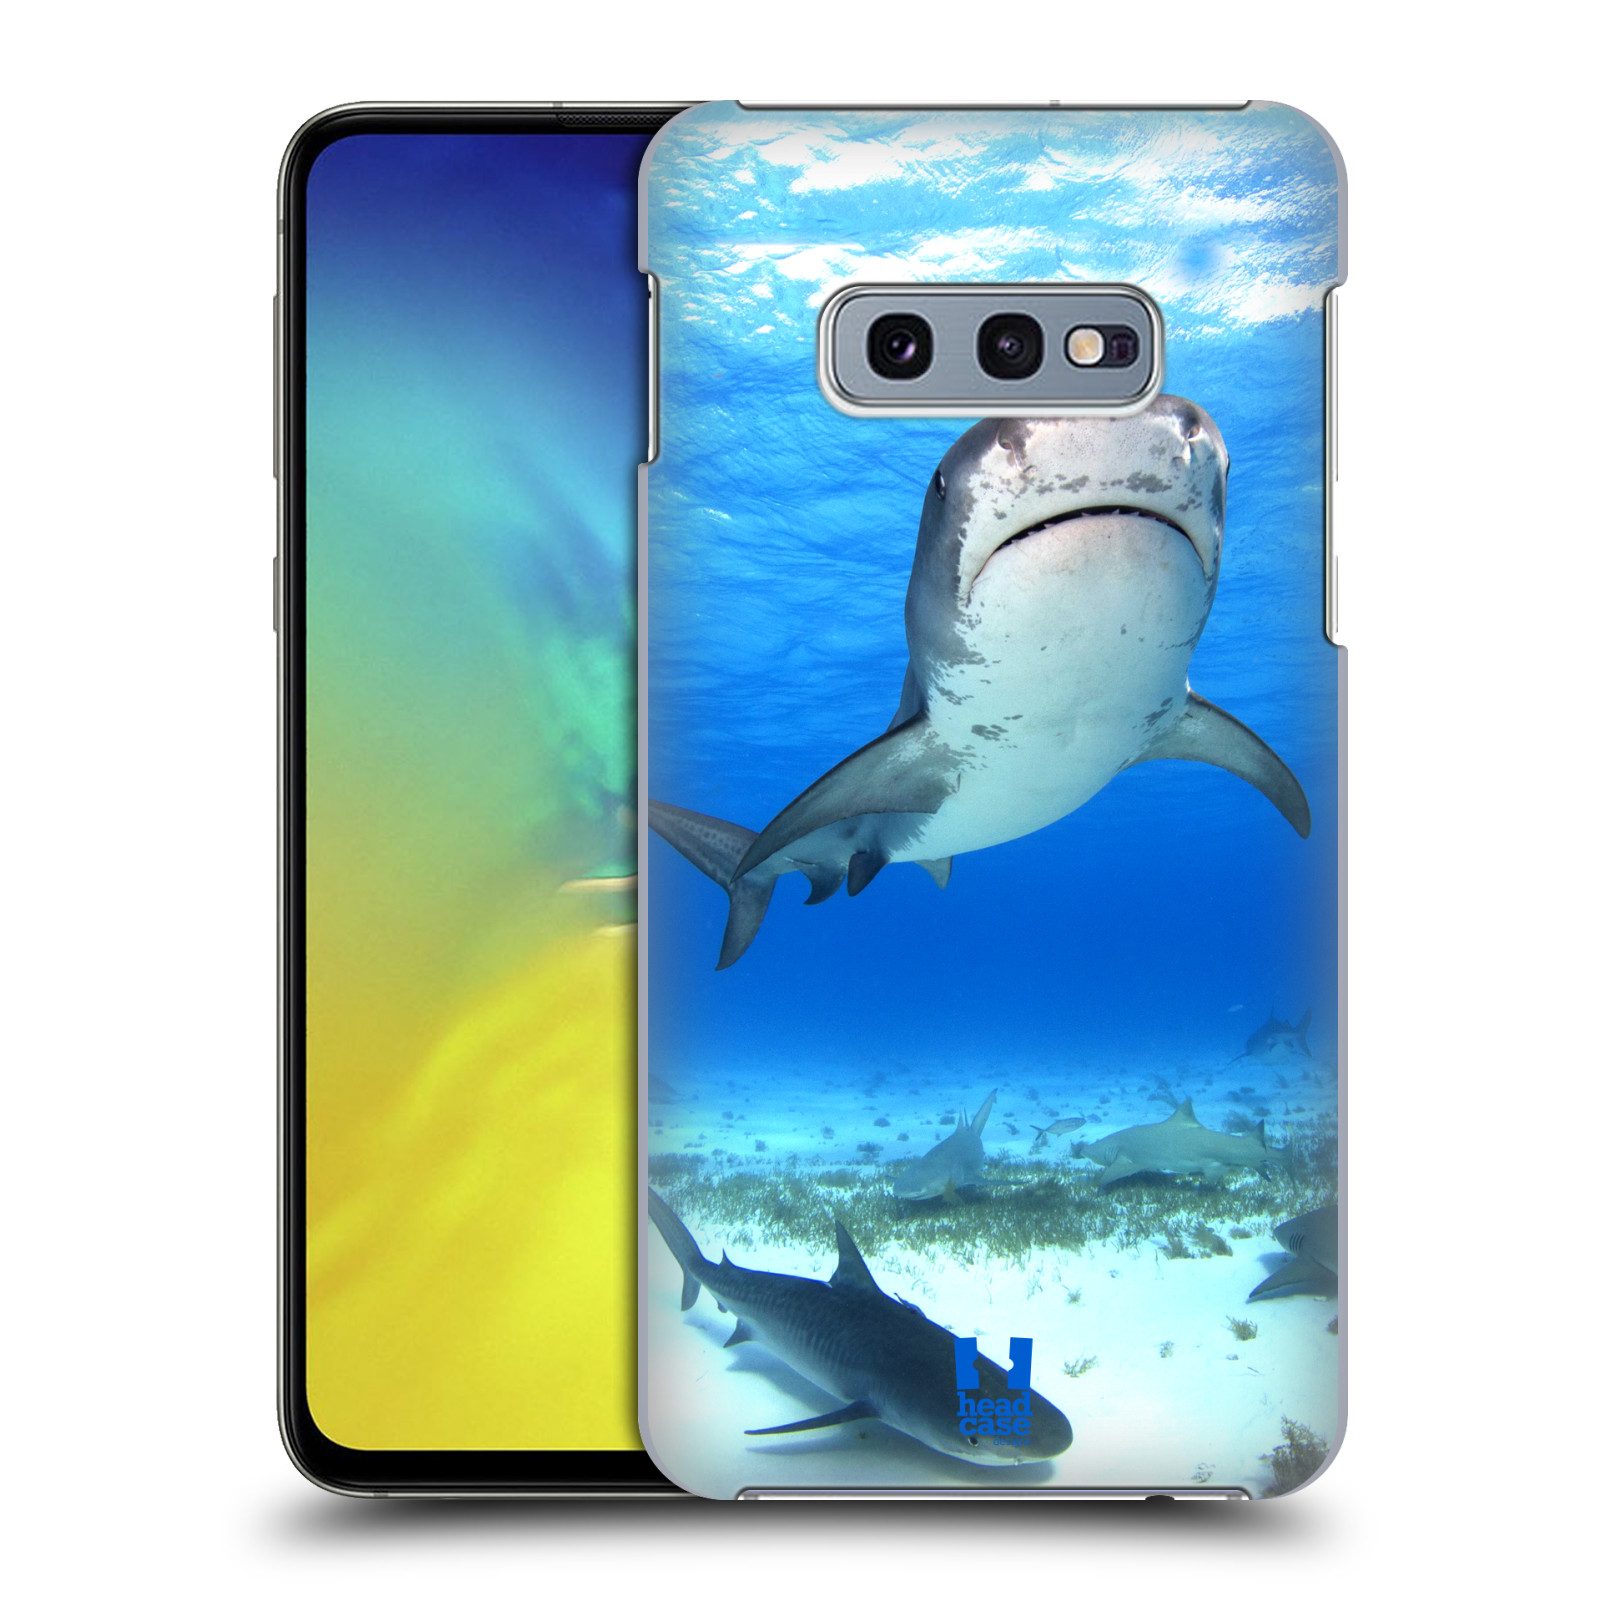 Pouzdro na mobil Samsung Galaxy S10e - HEAD CASE - vzor slavná zvířata foto žralok tygří